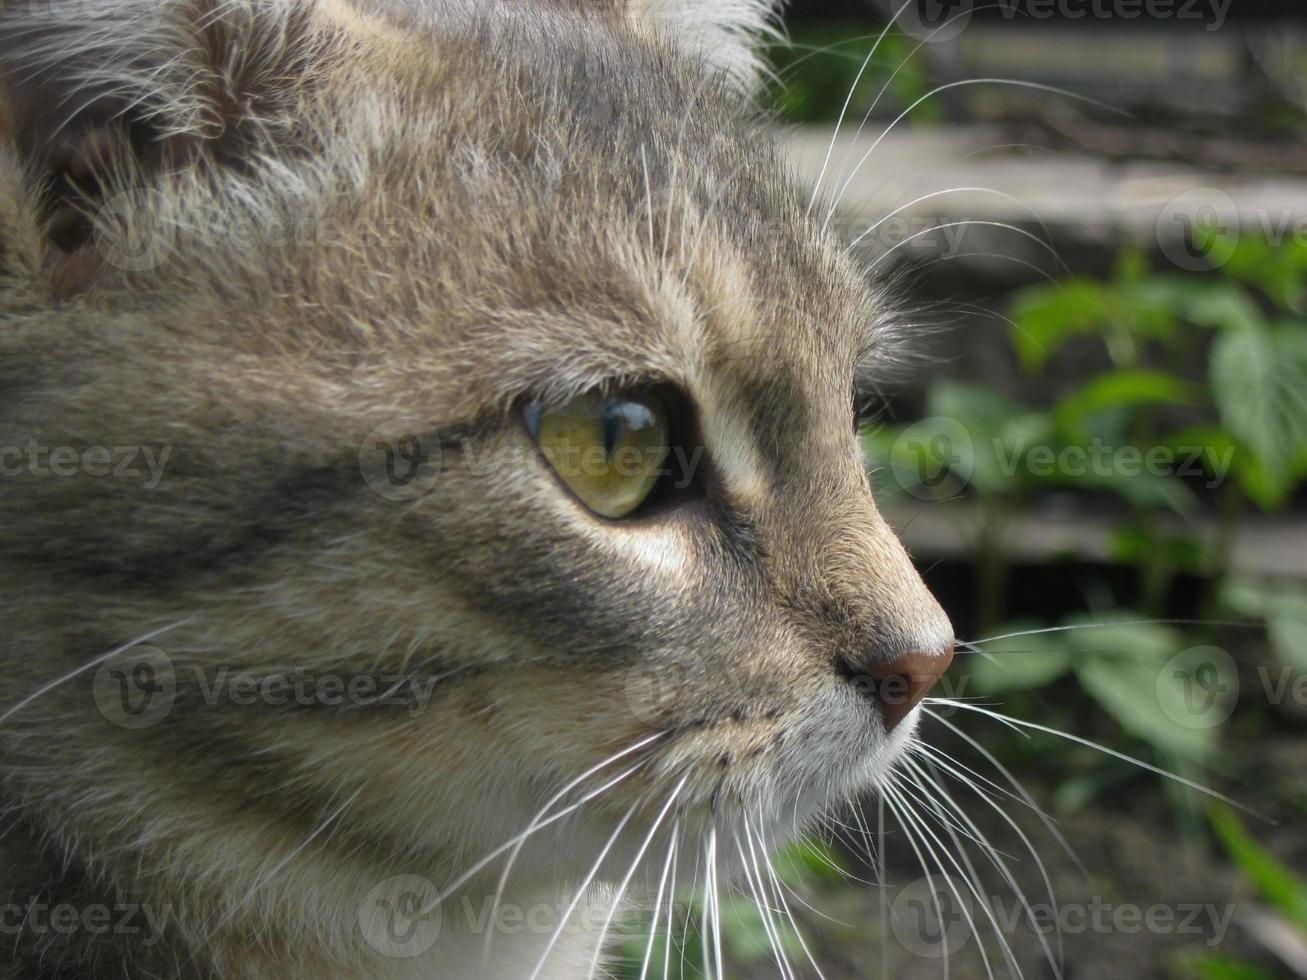 kattens ansikte i profil mot en bakgrund av gräs och växter foto